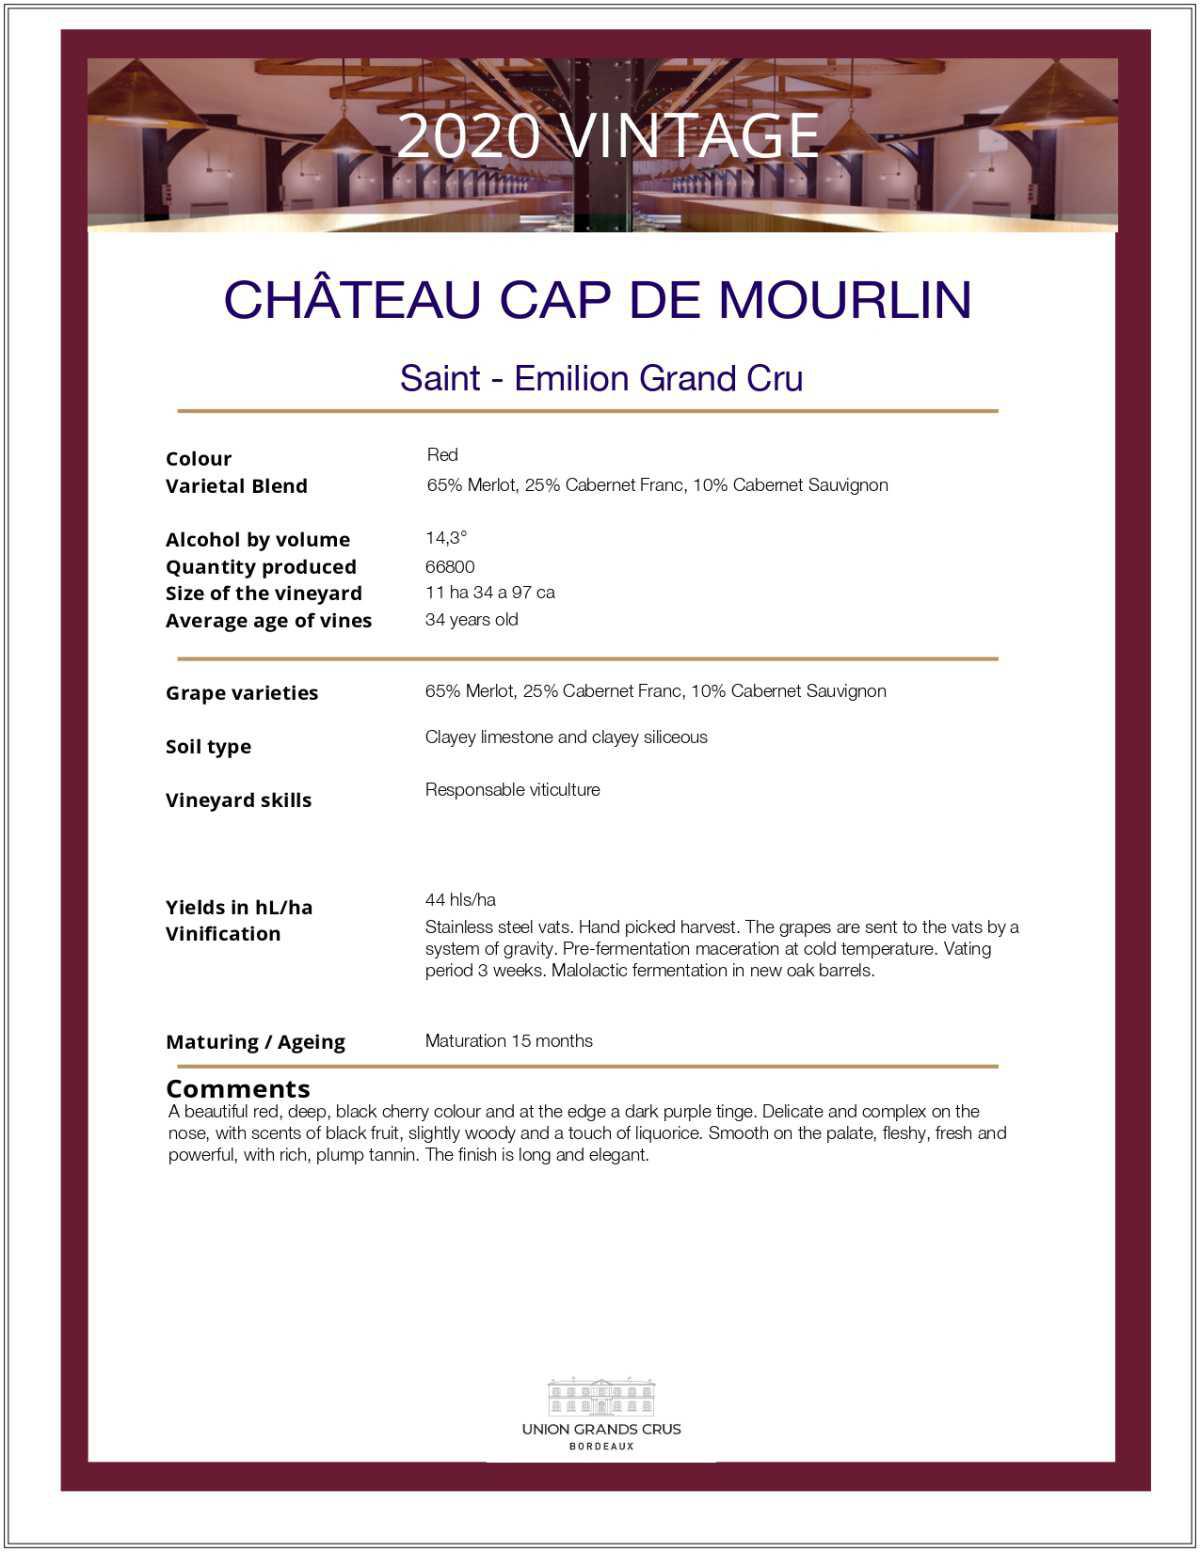 Château Cap de Mourlin